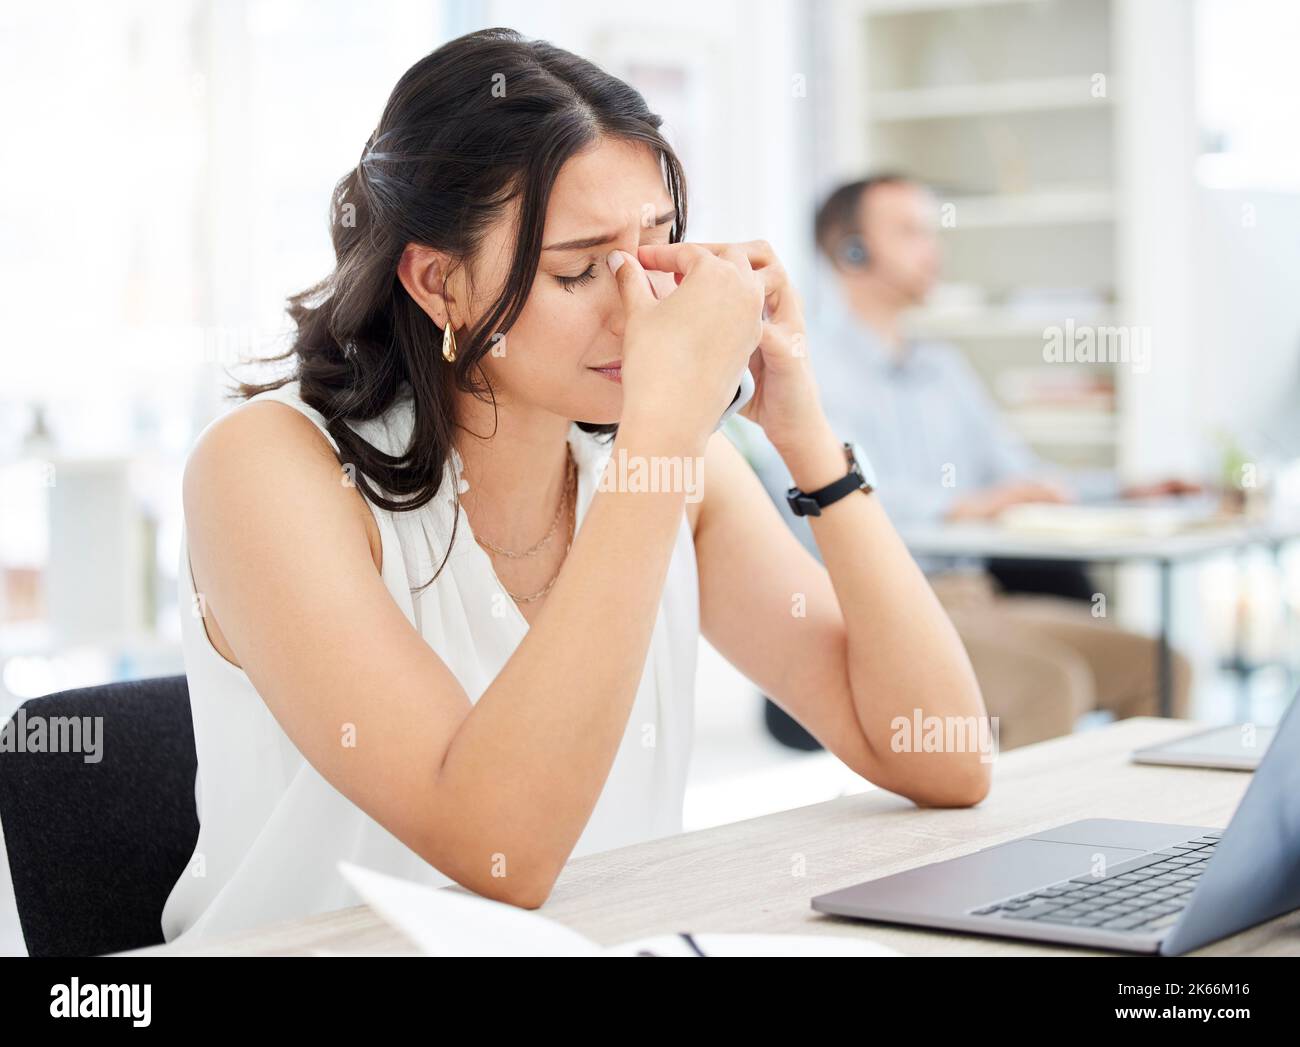 Je me bat dur aujourd'hui. Une jeune femme d'affaires regardant stressé tout en parlant sur un téléphone portable dans un bureau. Banque D'Images